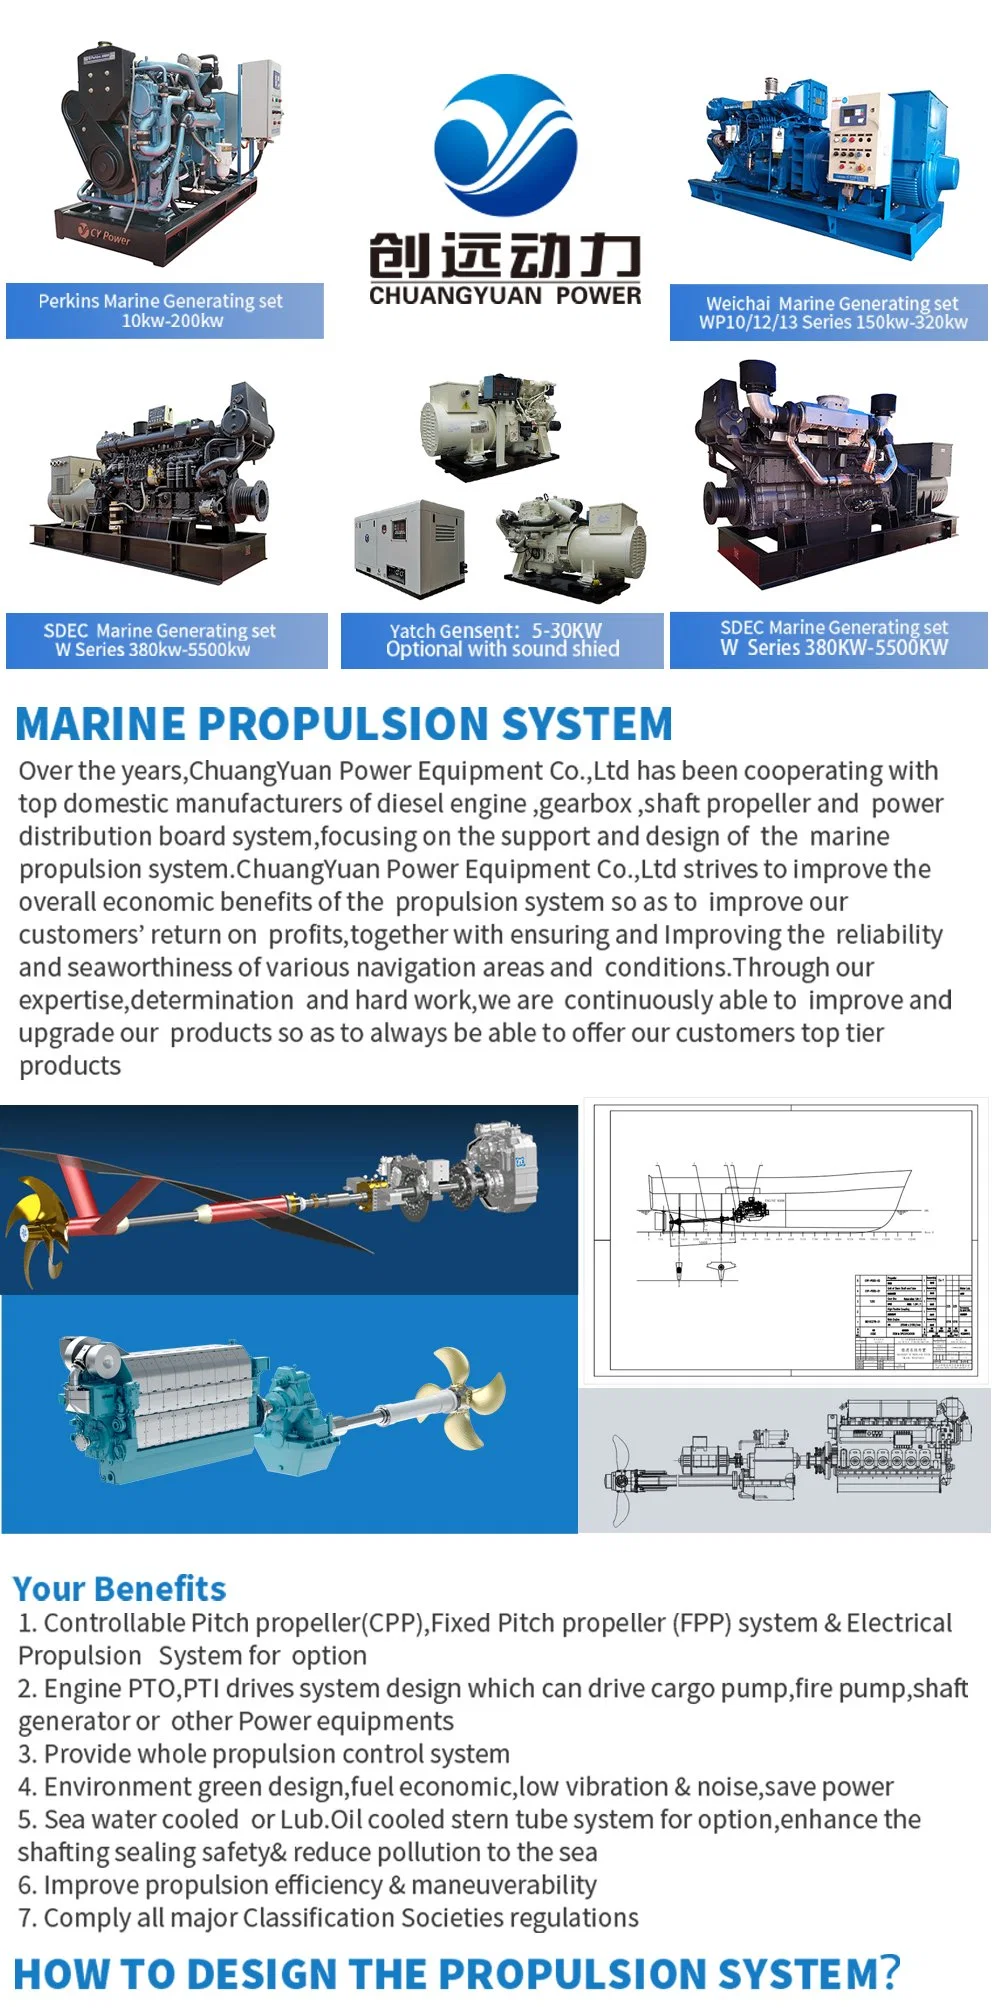 40kw Marine Generator Set (Perkin Engine / Stamford) Made in China